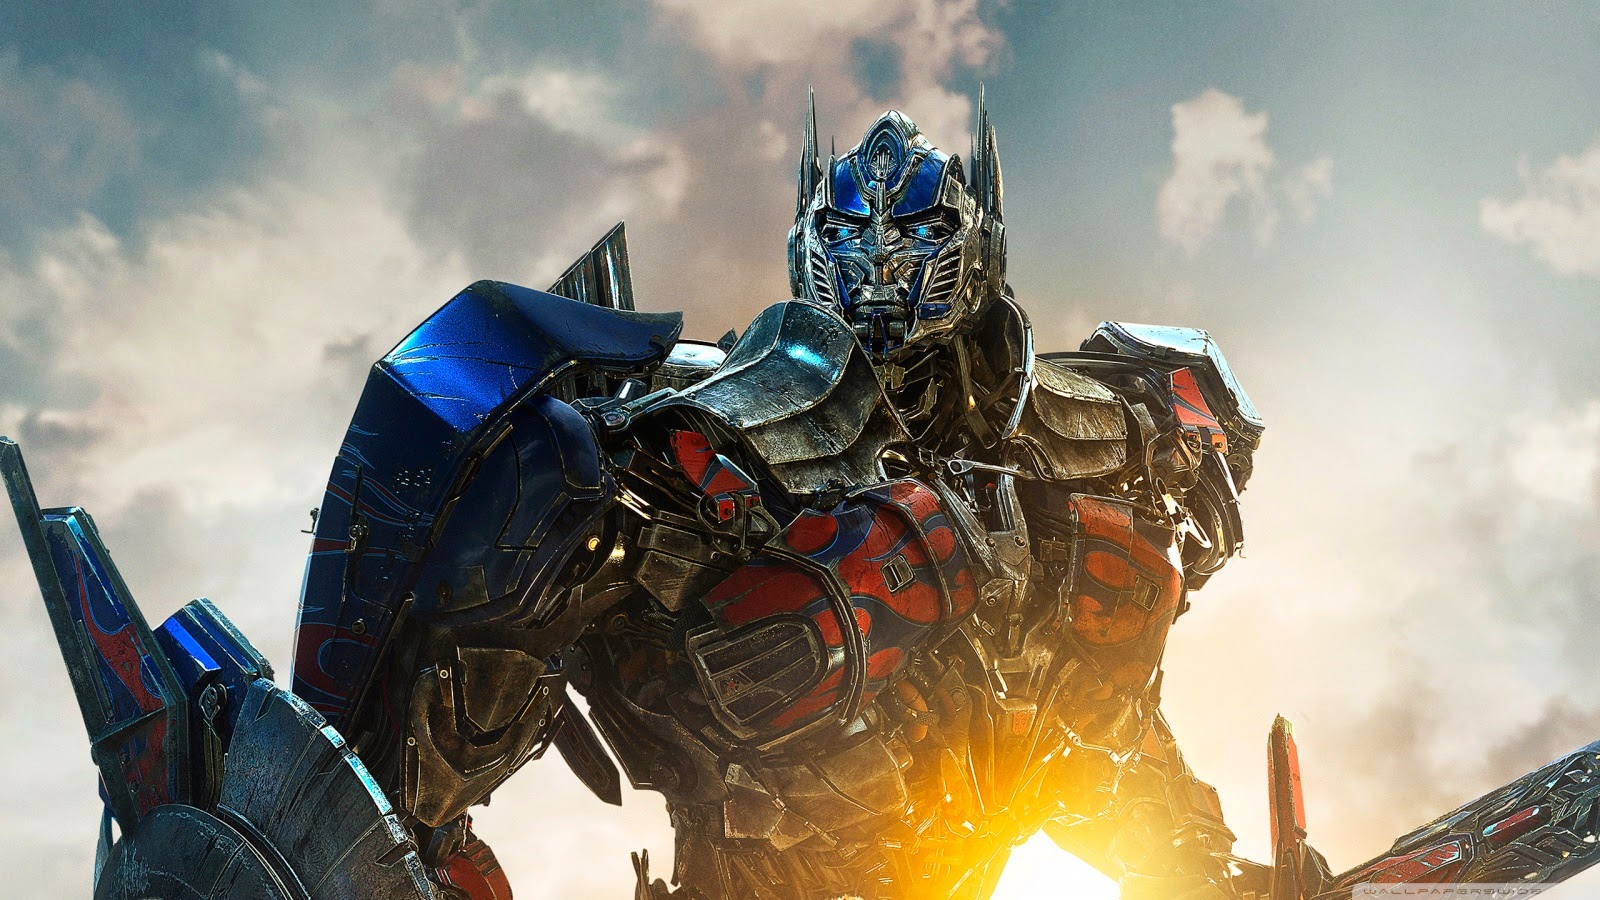 Những lần lột xác của người máy Optimus Prime thuộc Transformers  Phim  chiếu rạp